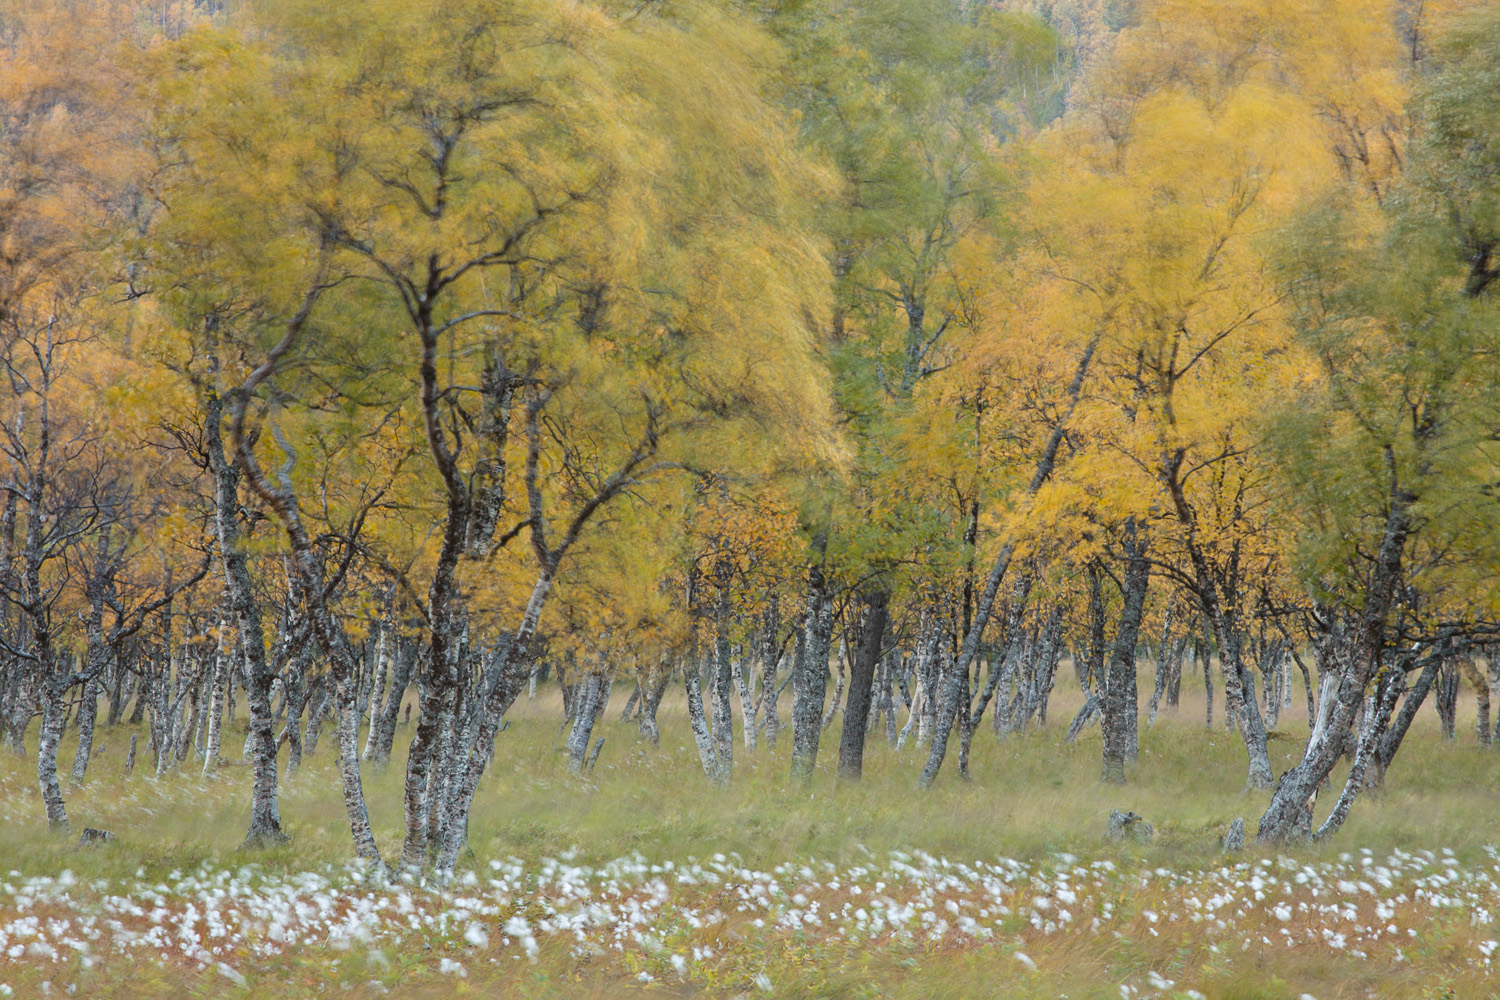 bois de bouleaux en automne, dans le vent, durant un voyage photo dans les Alpes de Lyngen, en Norvège